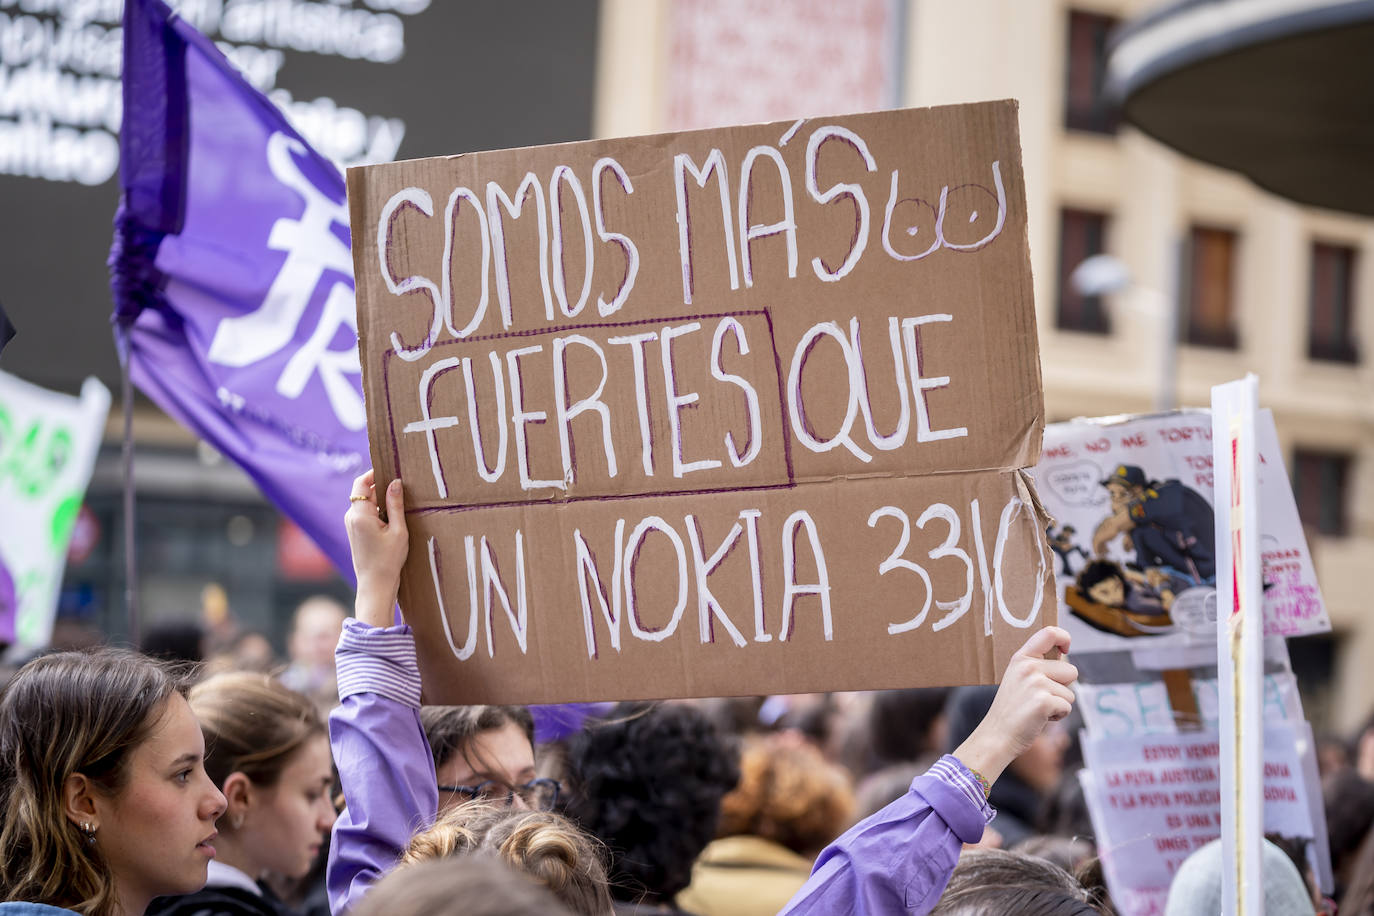 Imagen secundaria 1 - Manifestaciones en Madrid por el 8-M. 